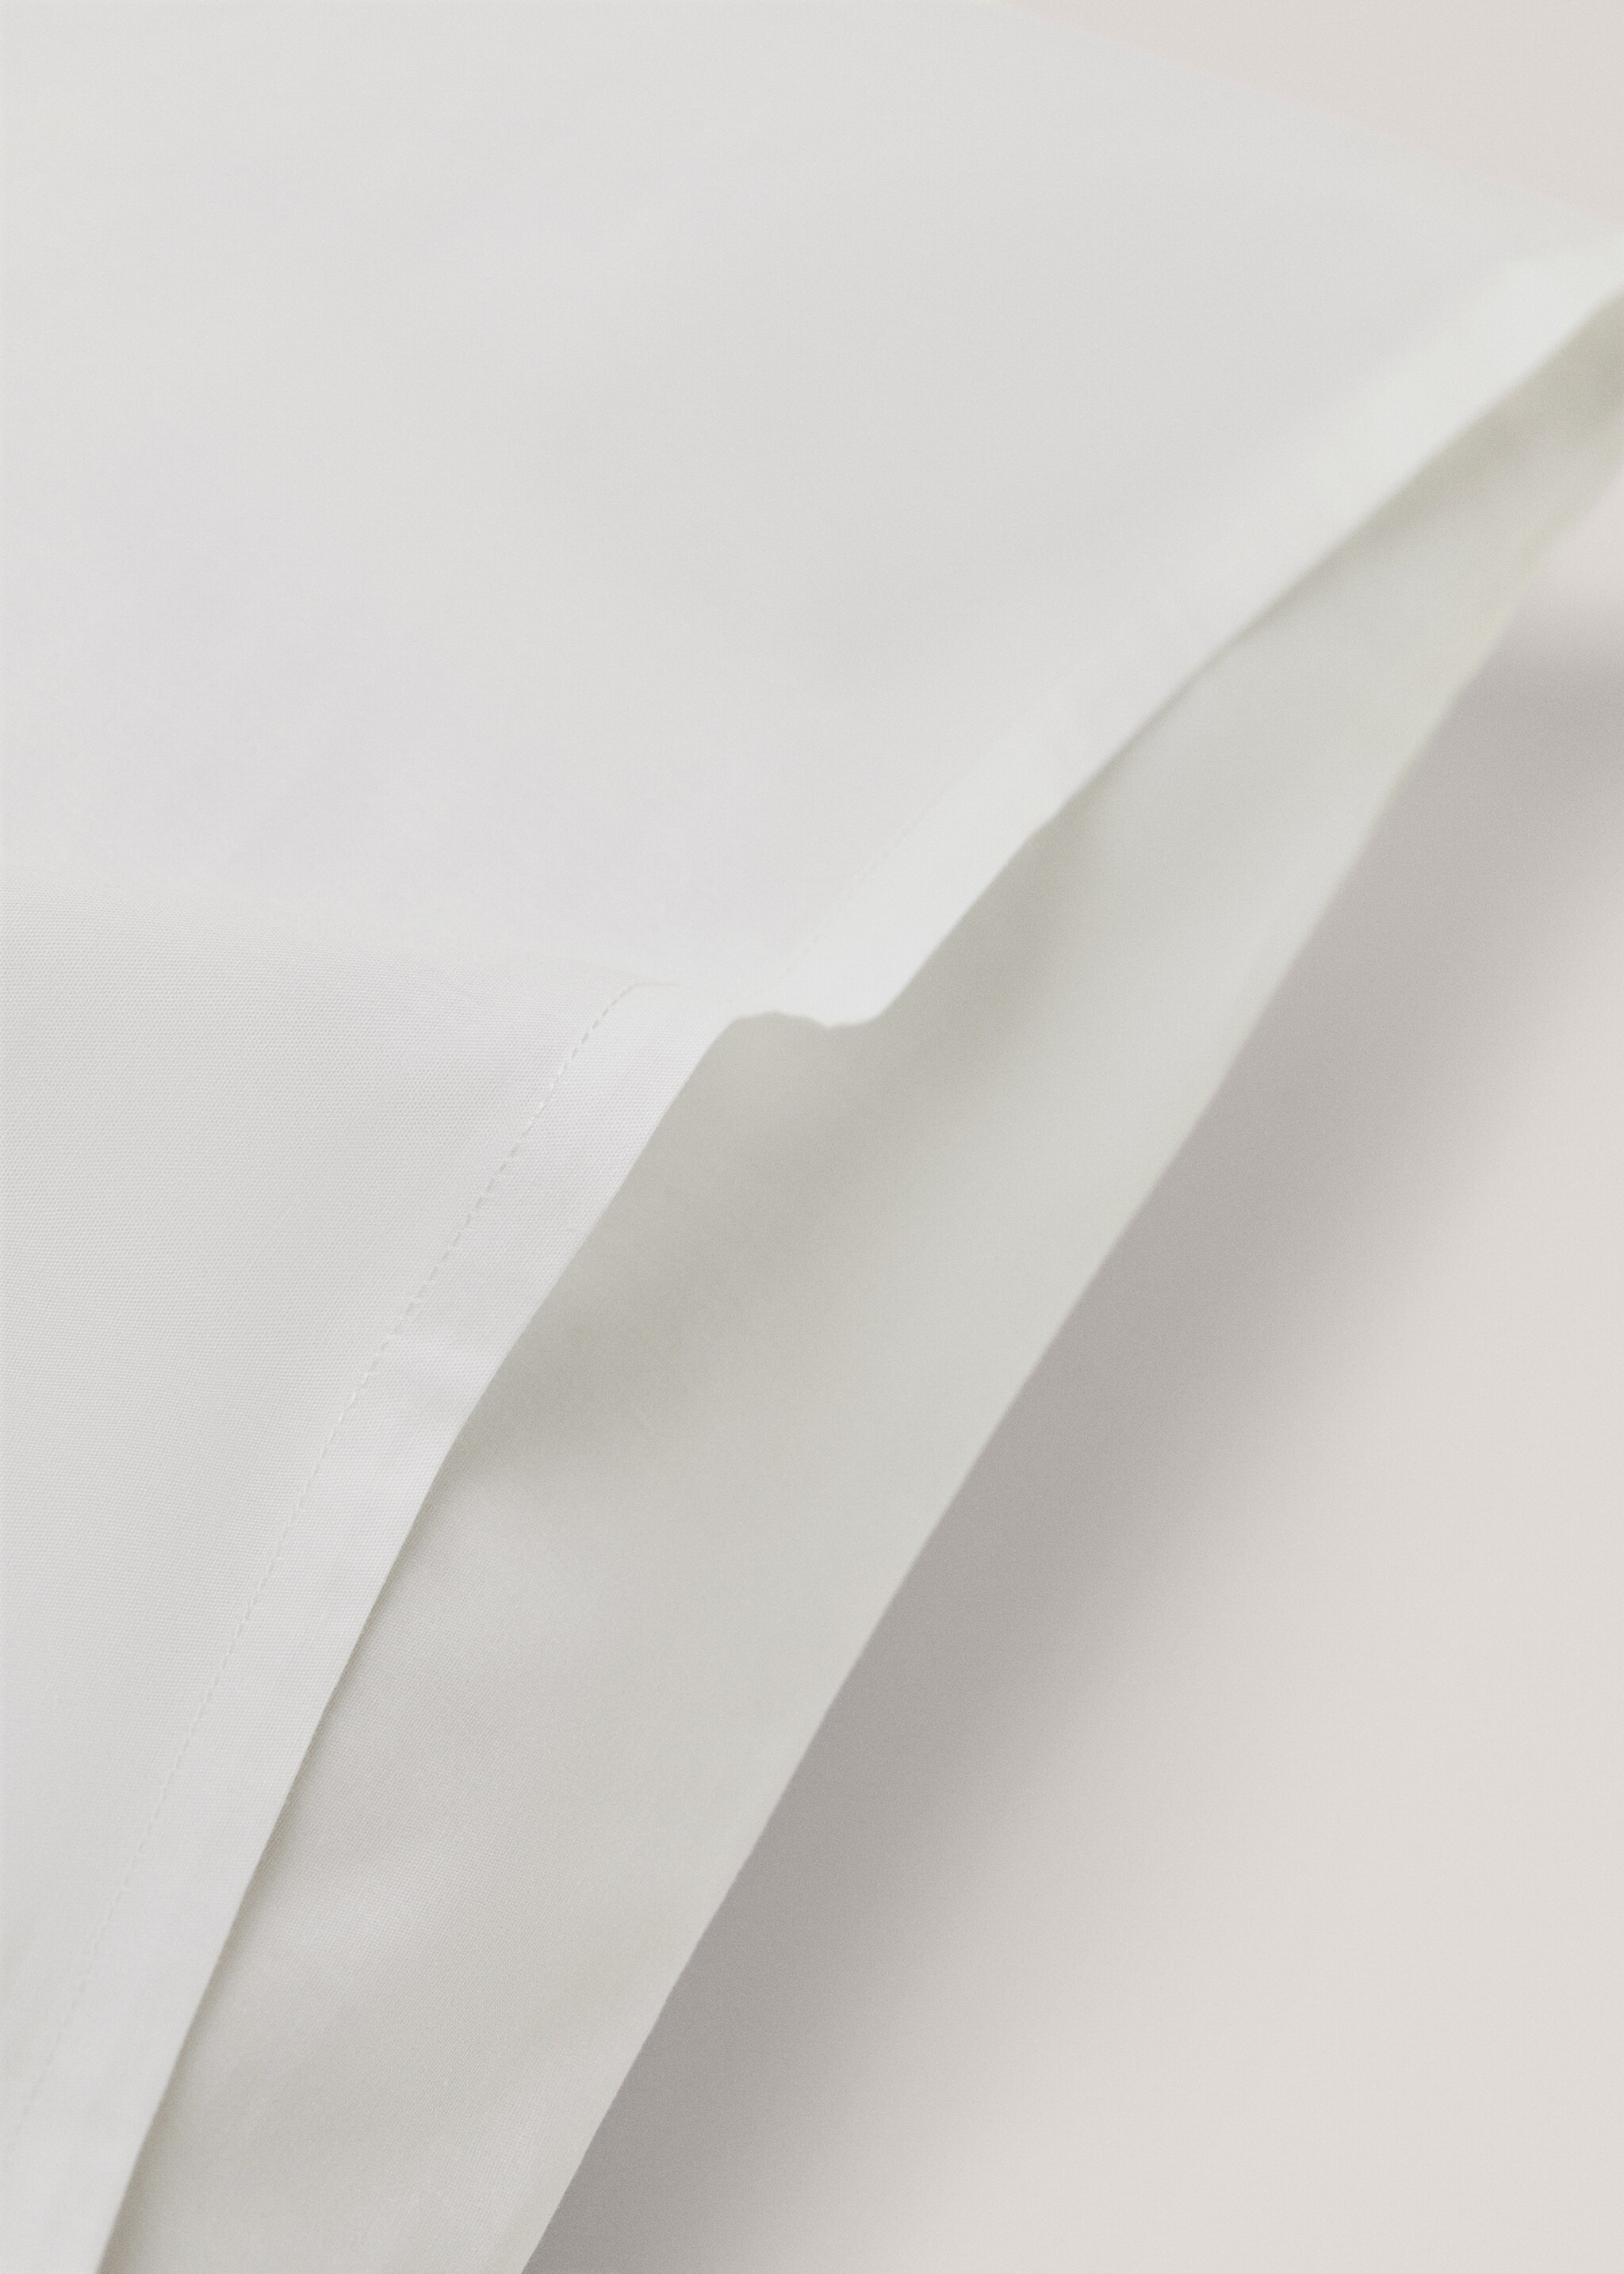 Funda almohada algodón percal 50x75cm - Detalle del artículo 2